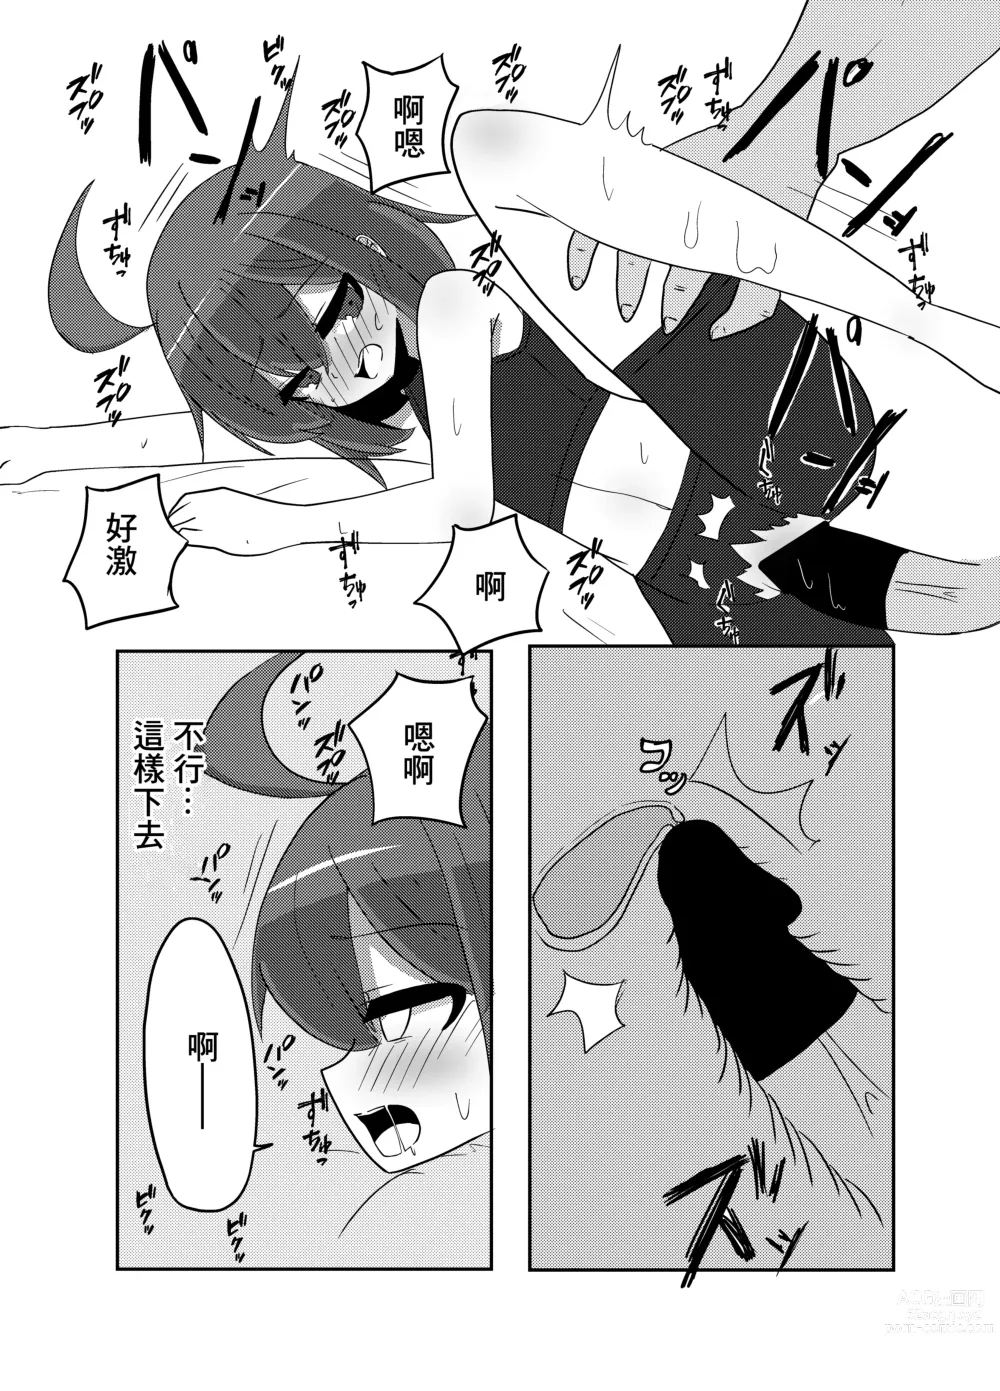 Page 10 of doujinshi Linne-chan Pinch!